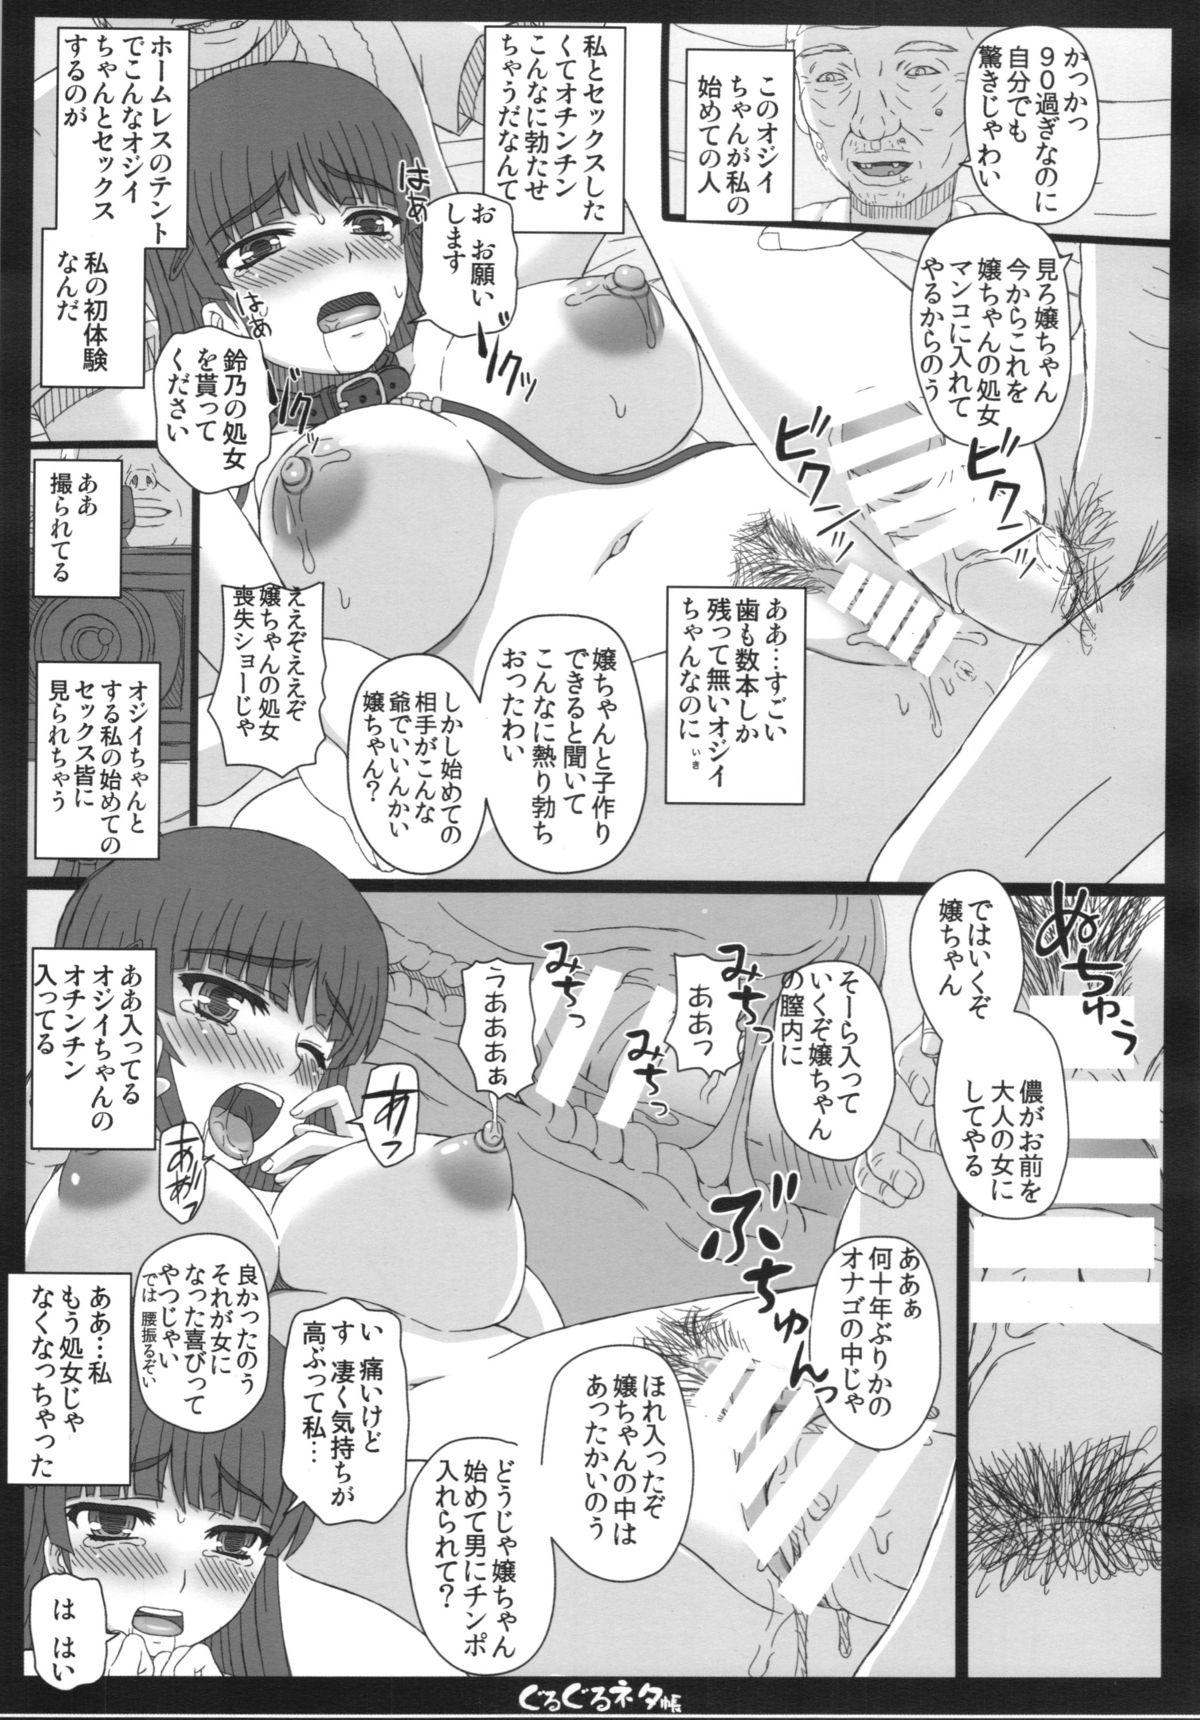 Sologirl Shiawase no Katachi no Guruguru Neta Chou + Paper Daddy - Page 7